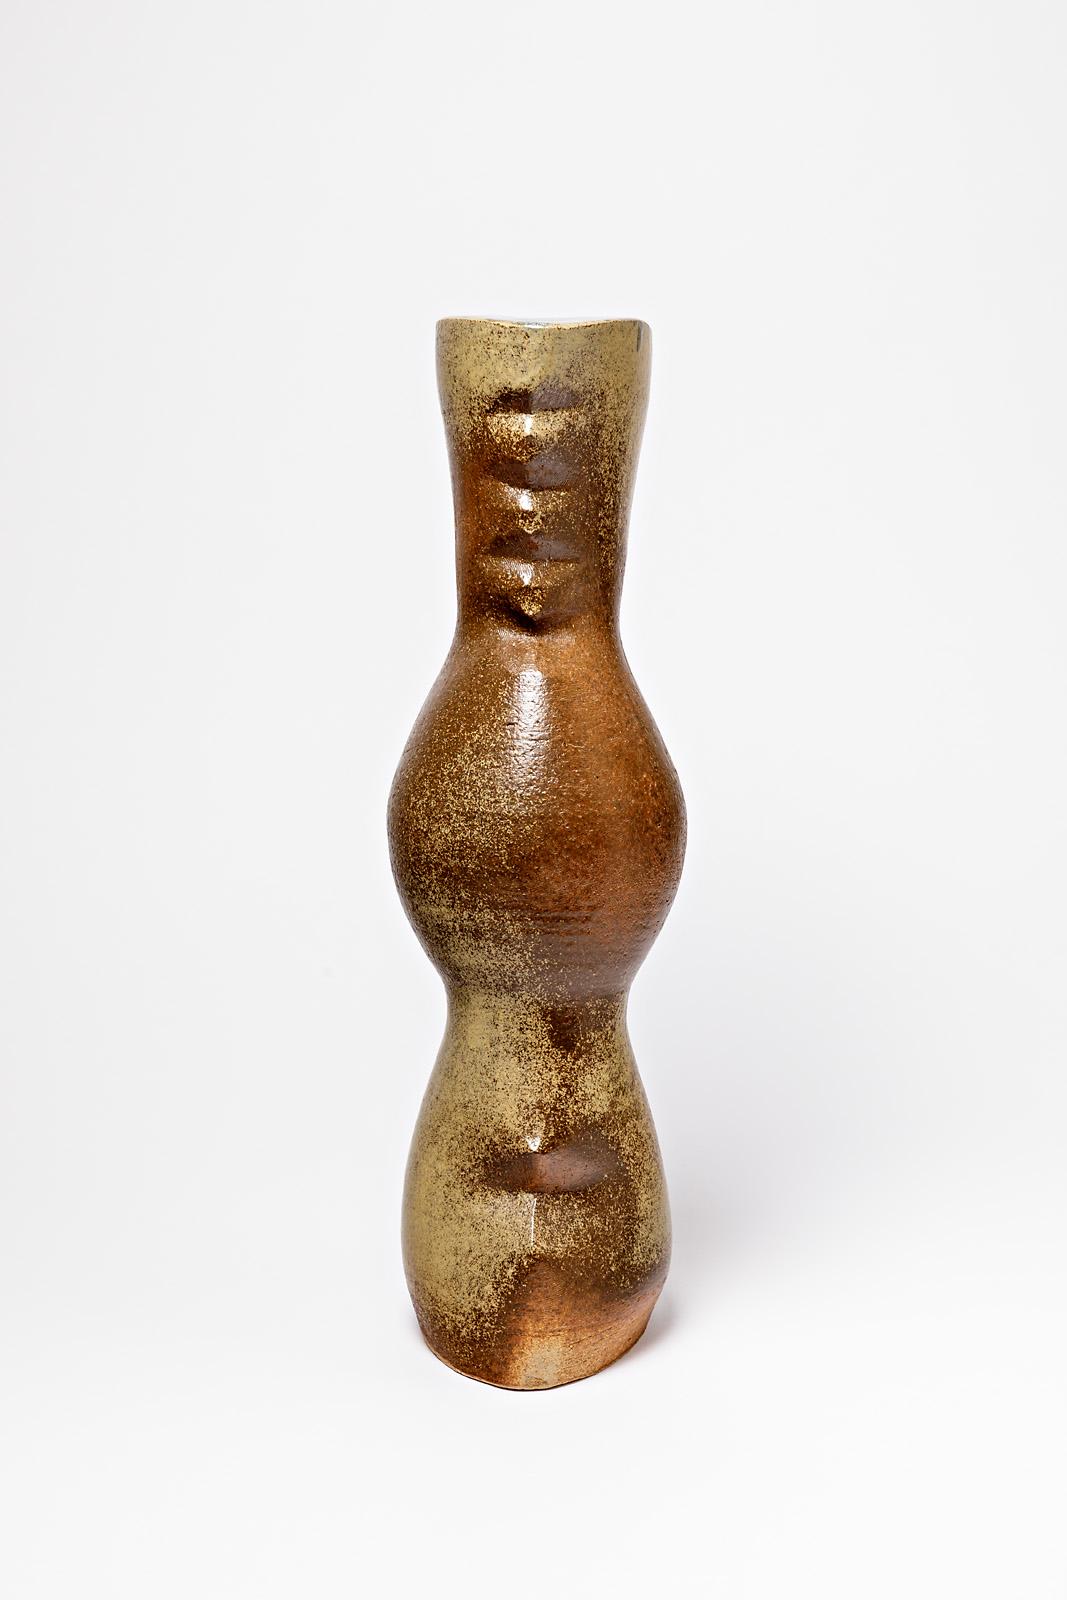 French Ceramic Sculptural Vase Attributed to Martin Hammond to La Borne, circa 1970